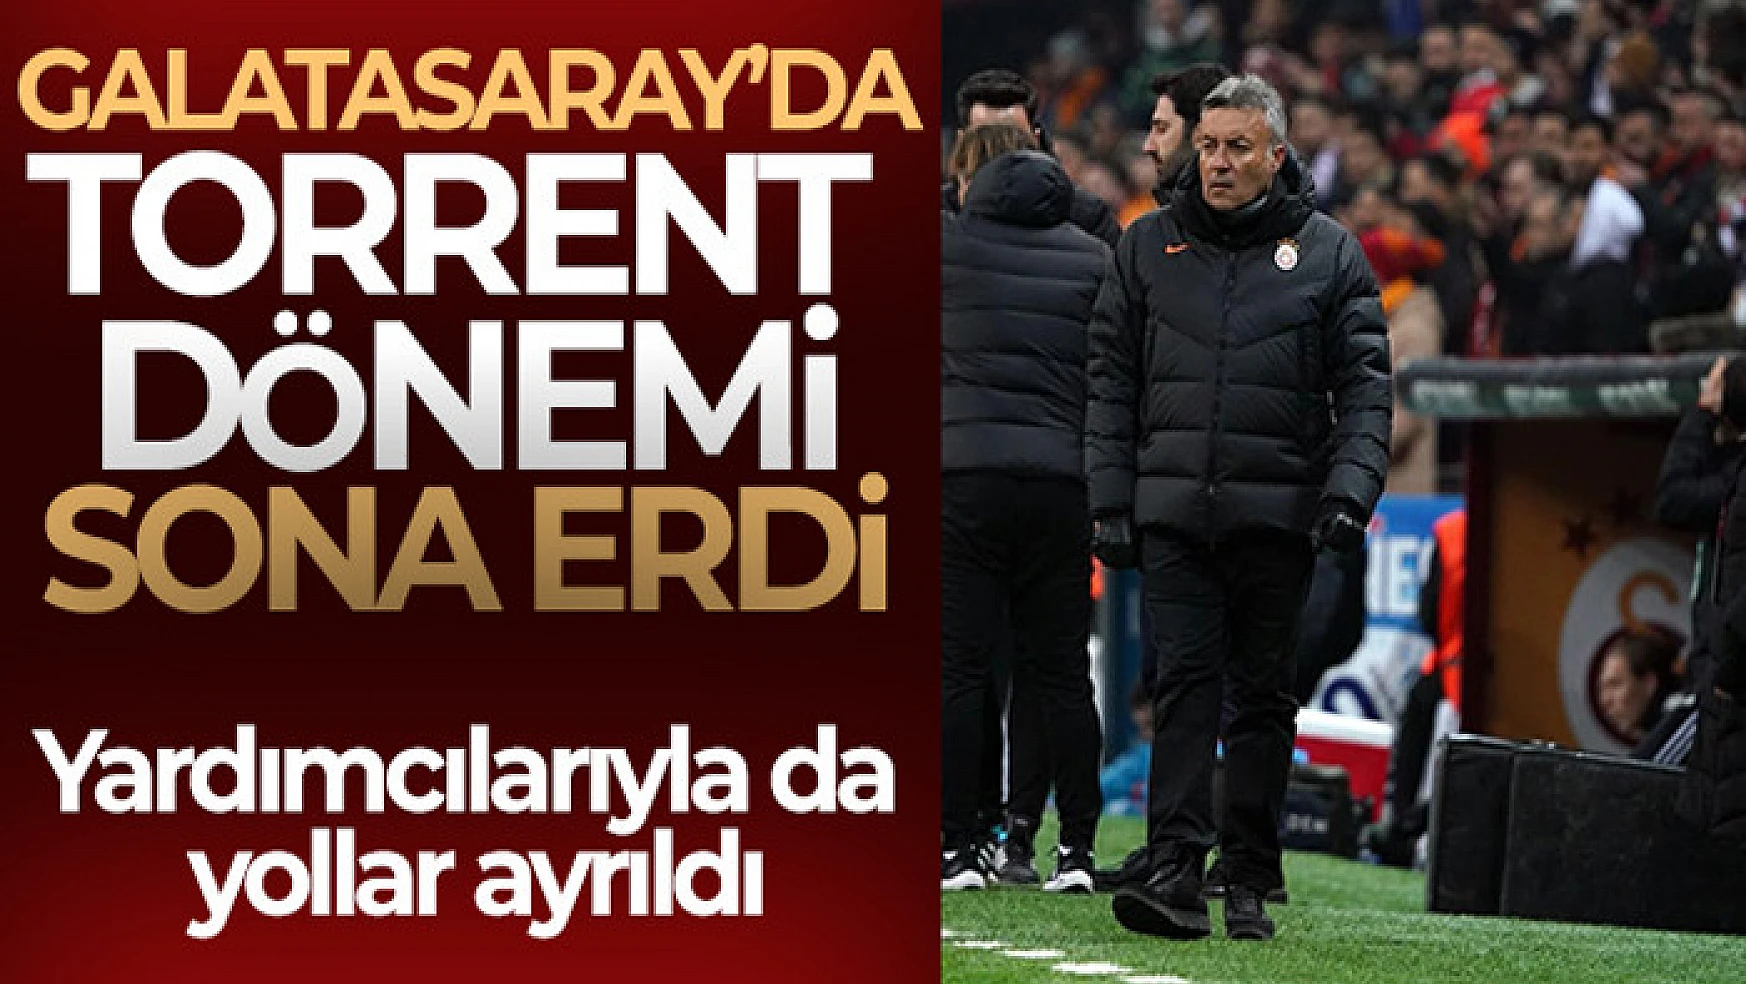 Galatasaray'da Torrent dönemi sona erdi